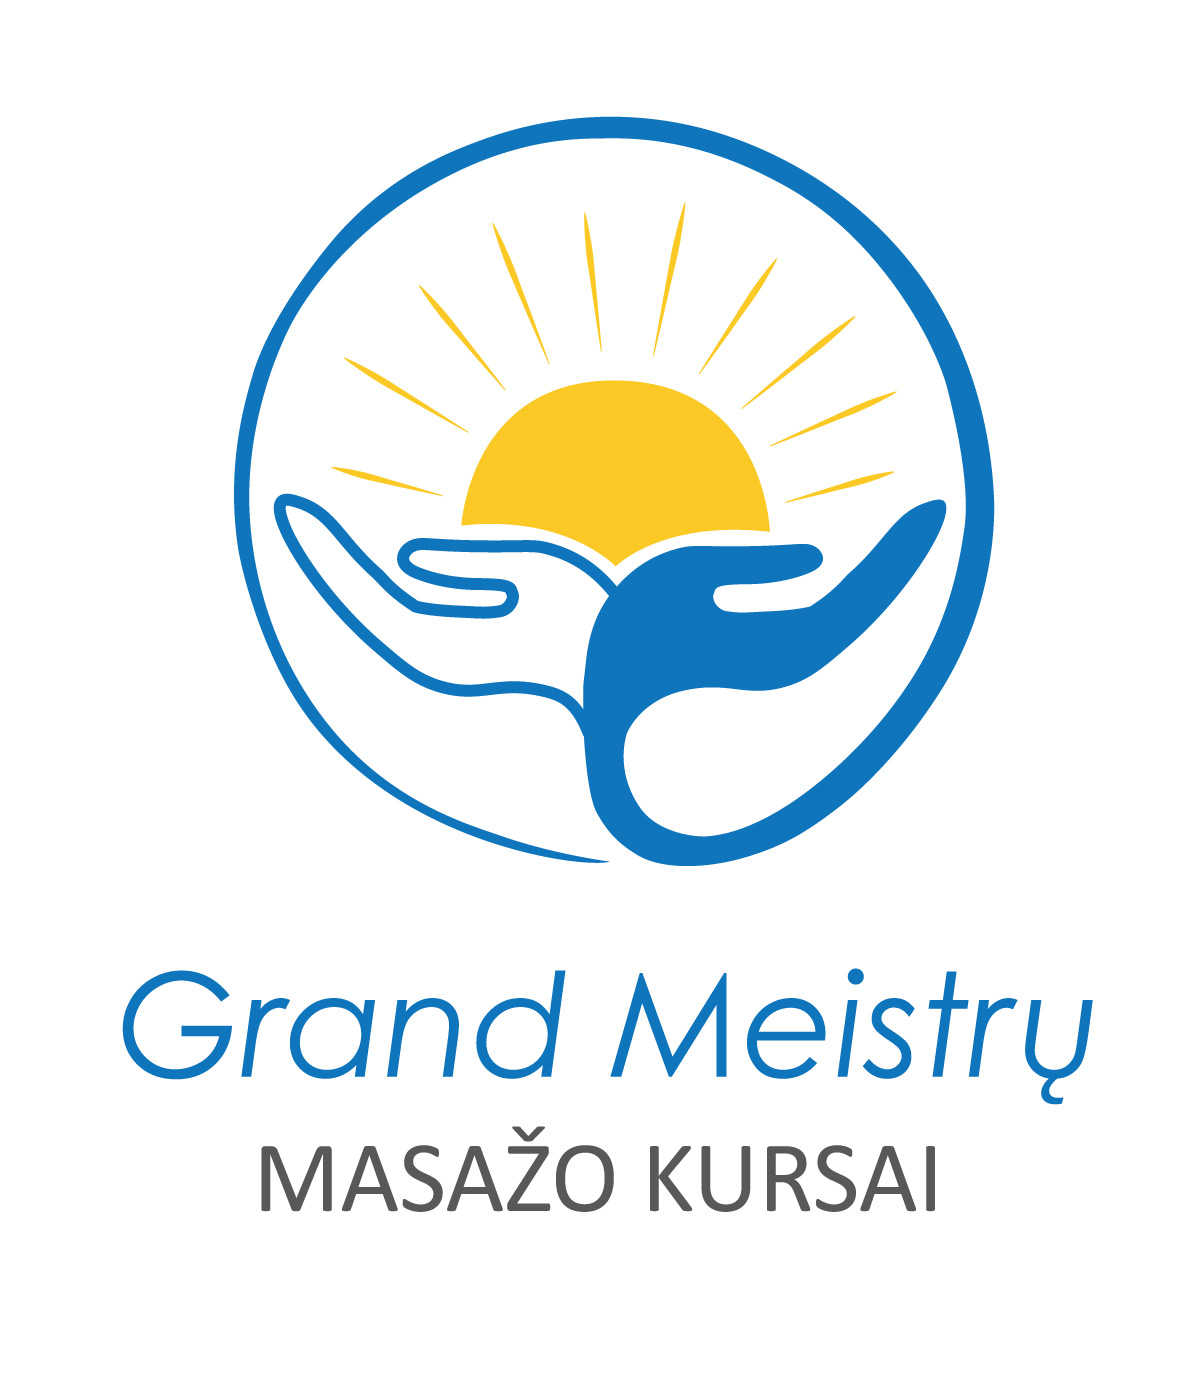 Grand Meistrų masažo kursai